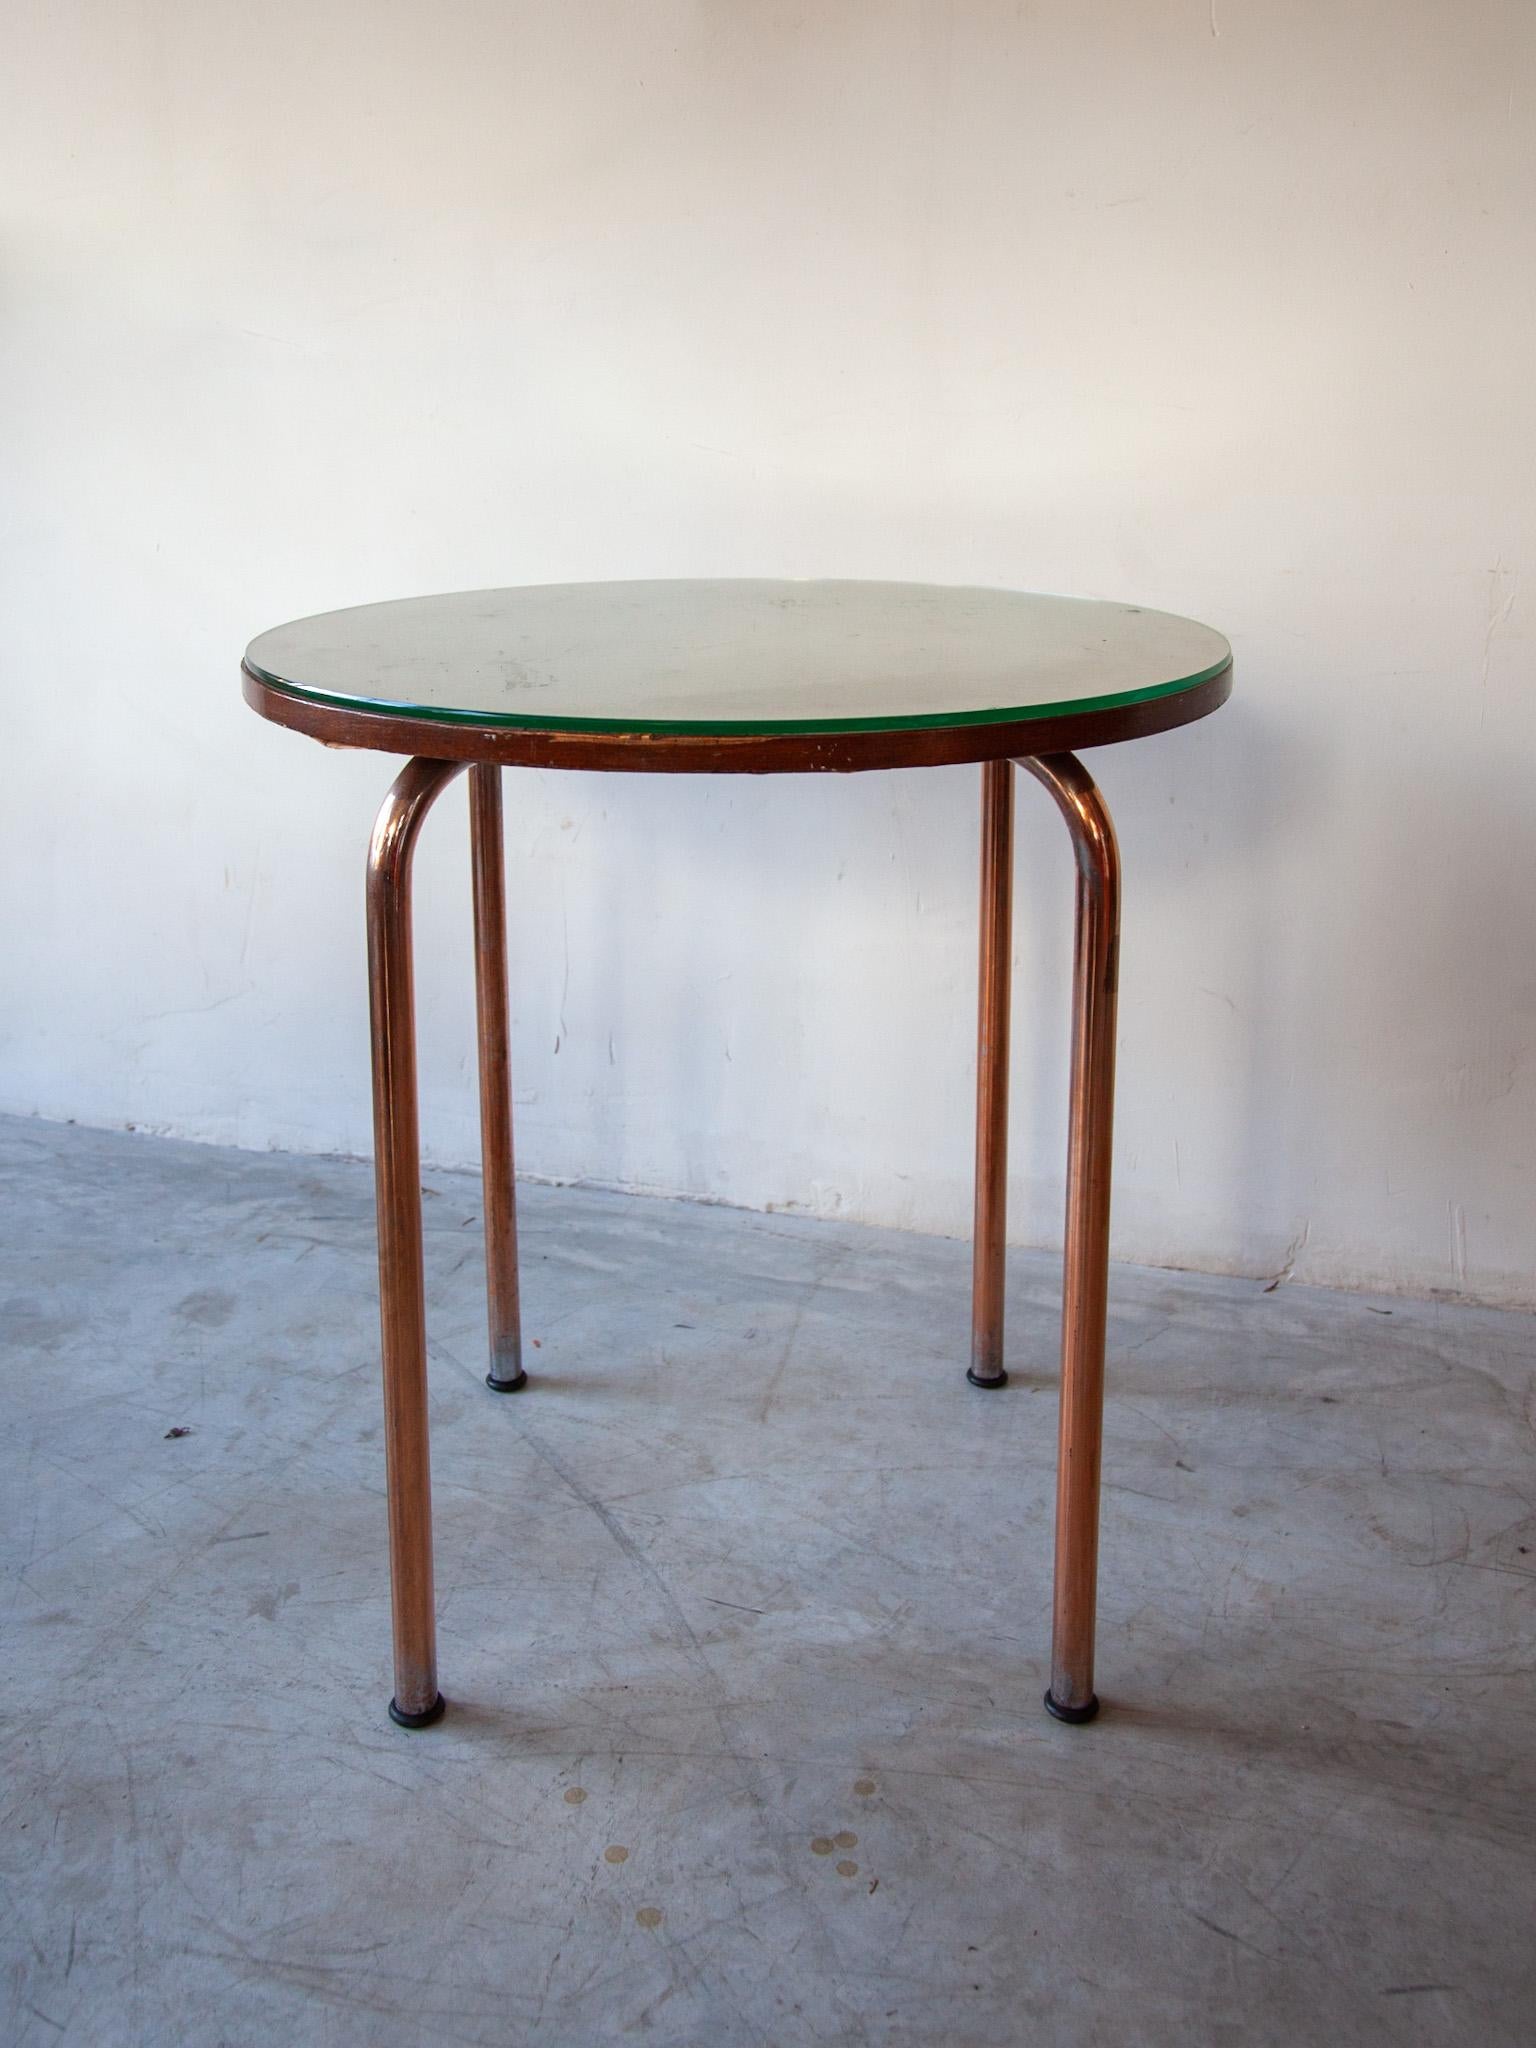 Dieser Beistelltisch wurde von Thonet in den 1930er Jahren entworfen. Der Tisch besteht aus einem röhrenförmigen Metallgestell aus Messing und einer Buchenholzplatte mit einem runden, facettierten Glas. In einem guten Vintage Zustand. Abmessungen: